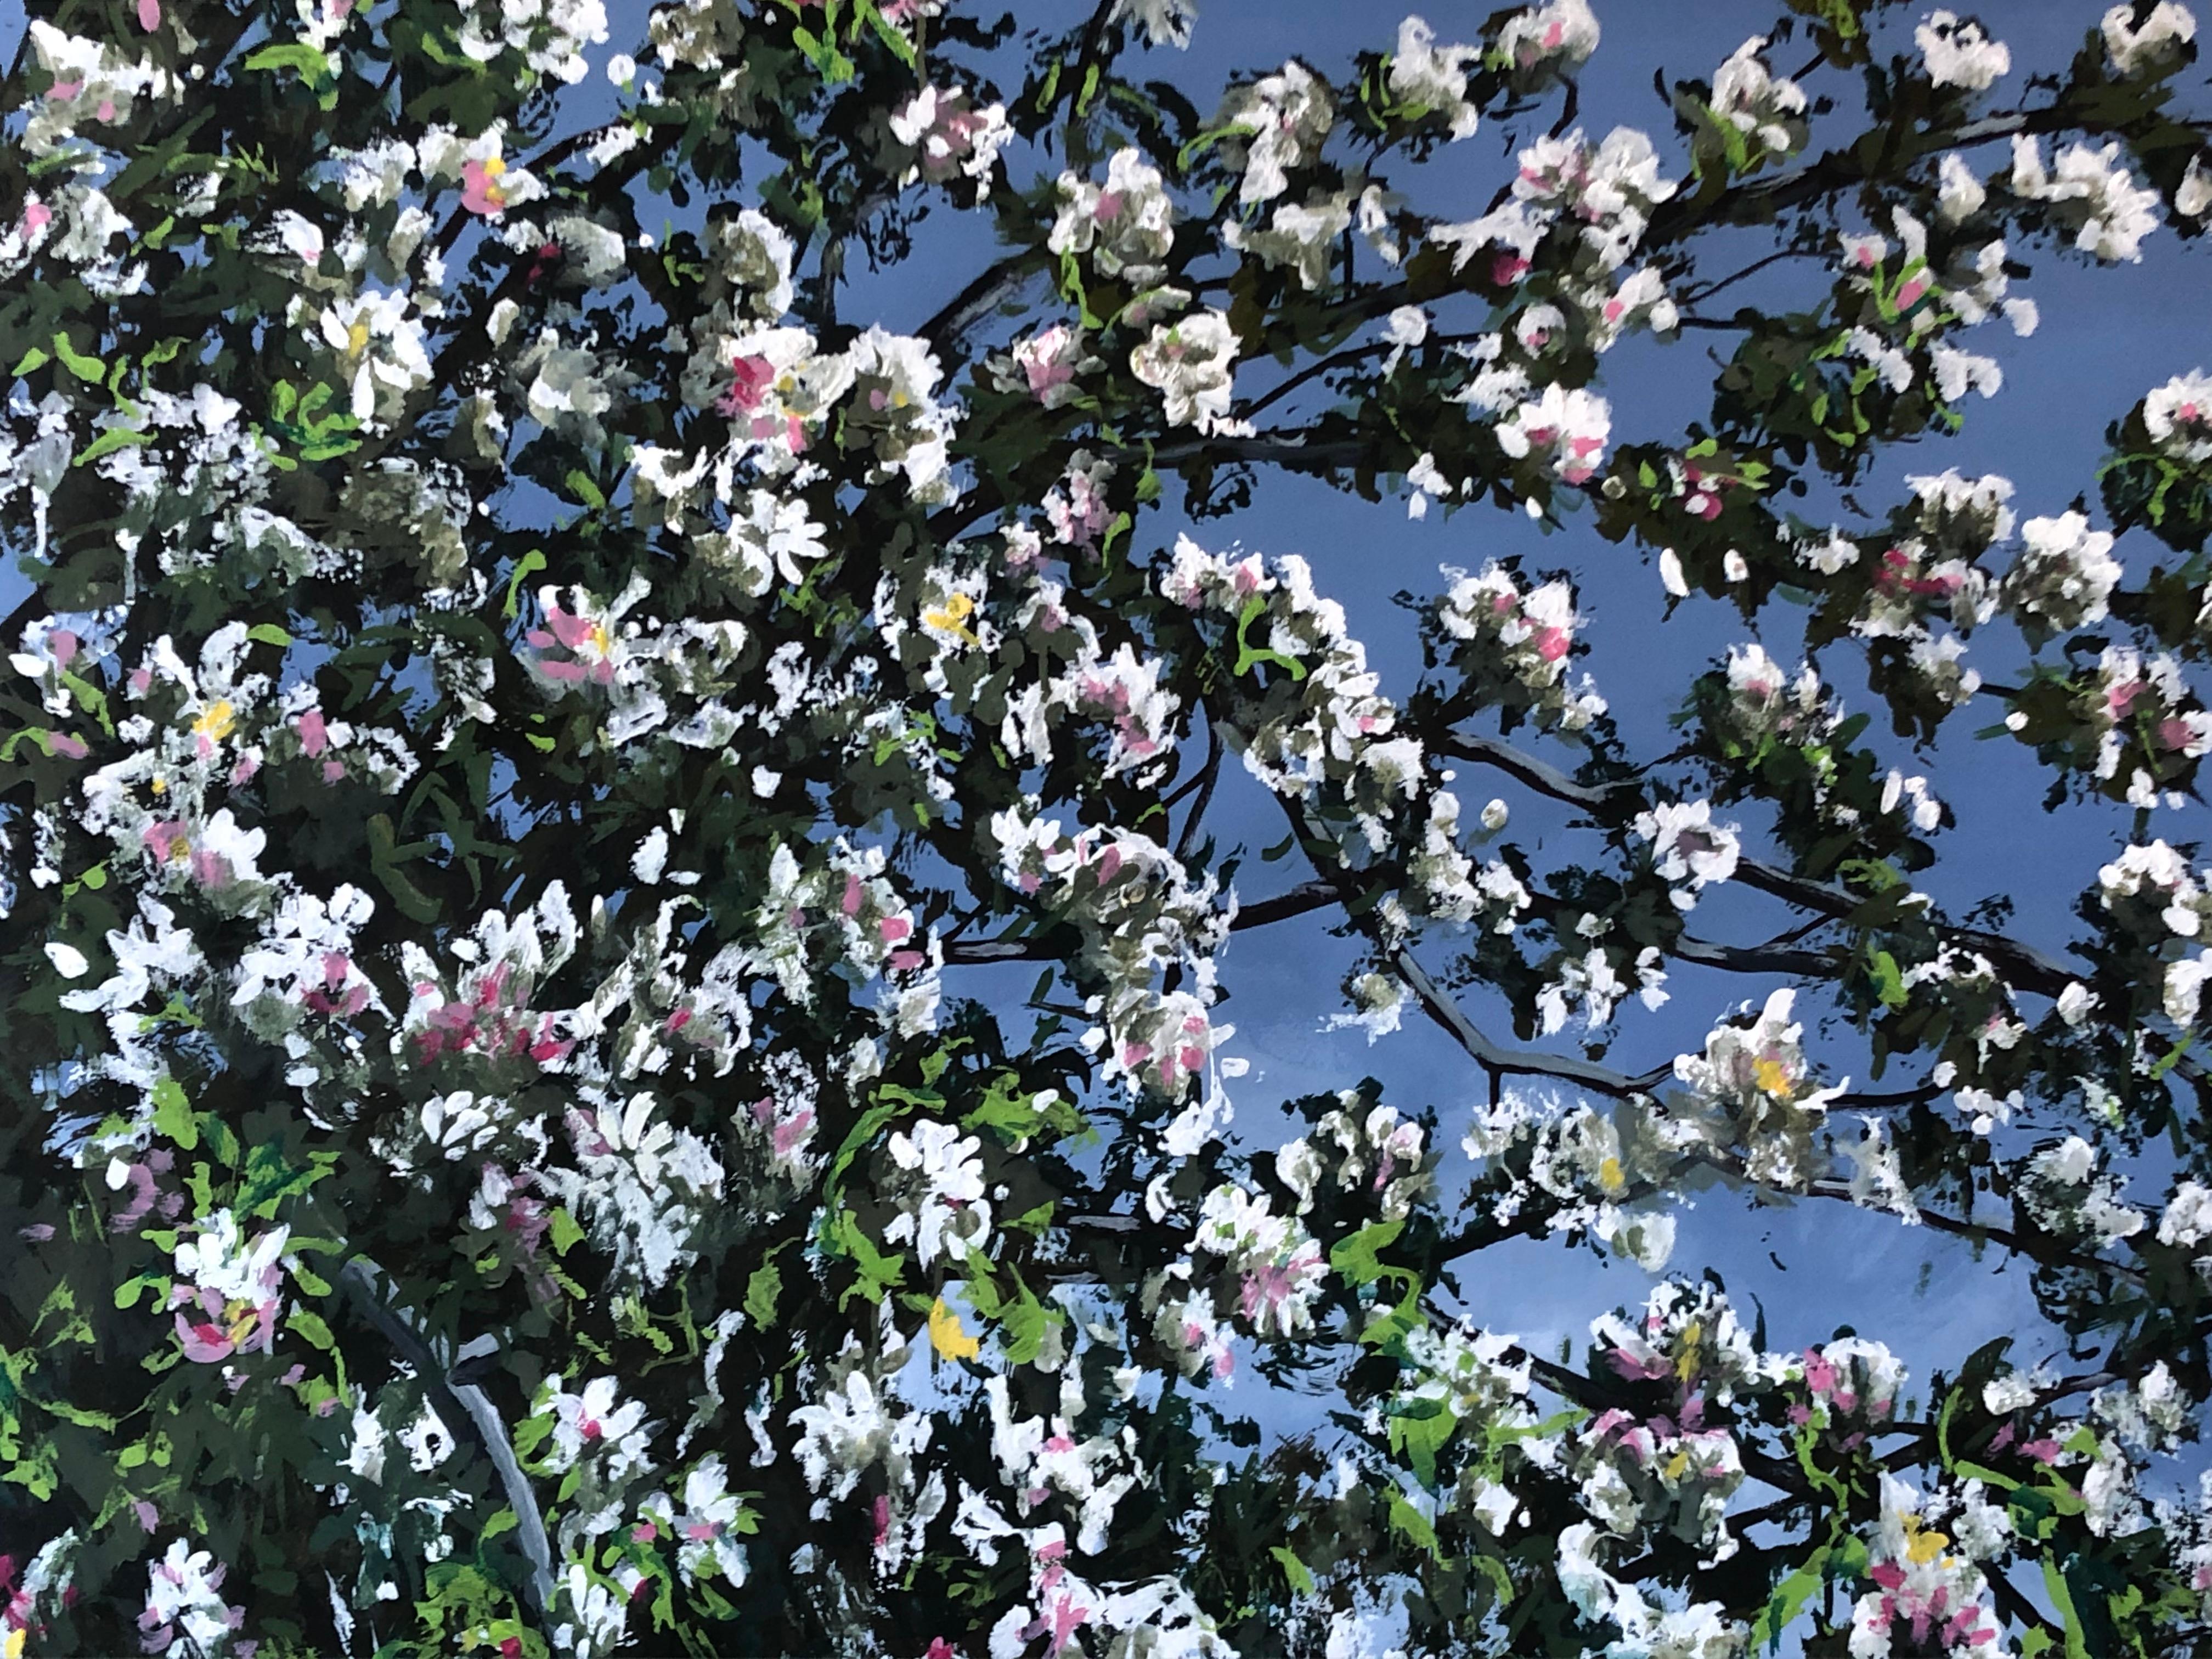 Landscape Painting Louis Danicher - Pommier fleuri dans un ciel bleu